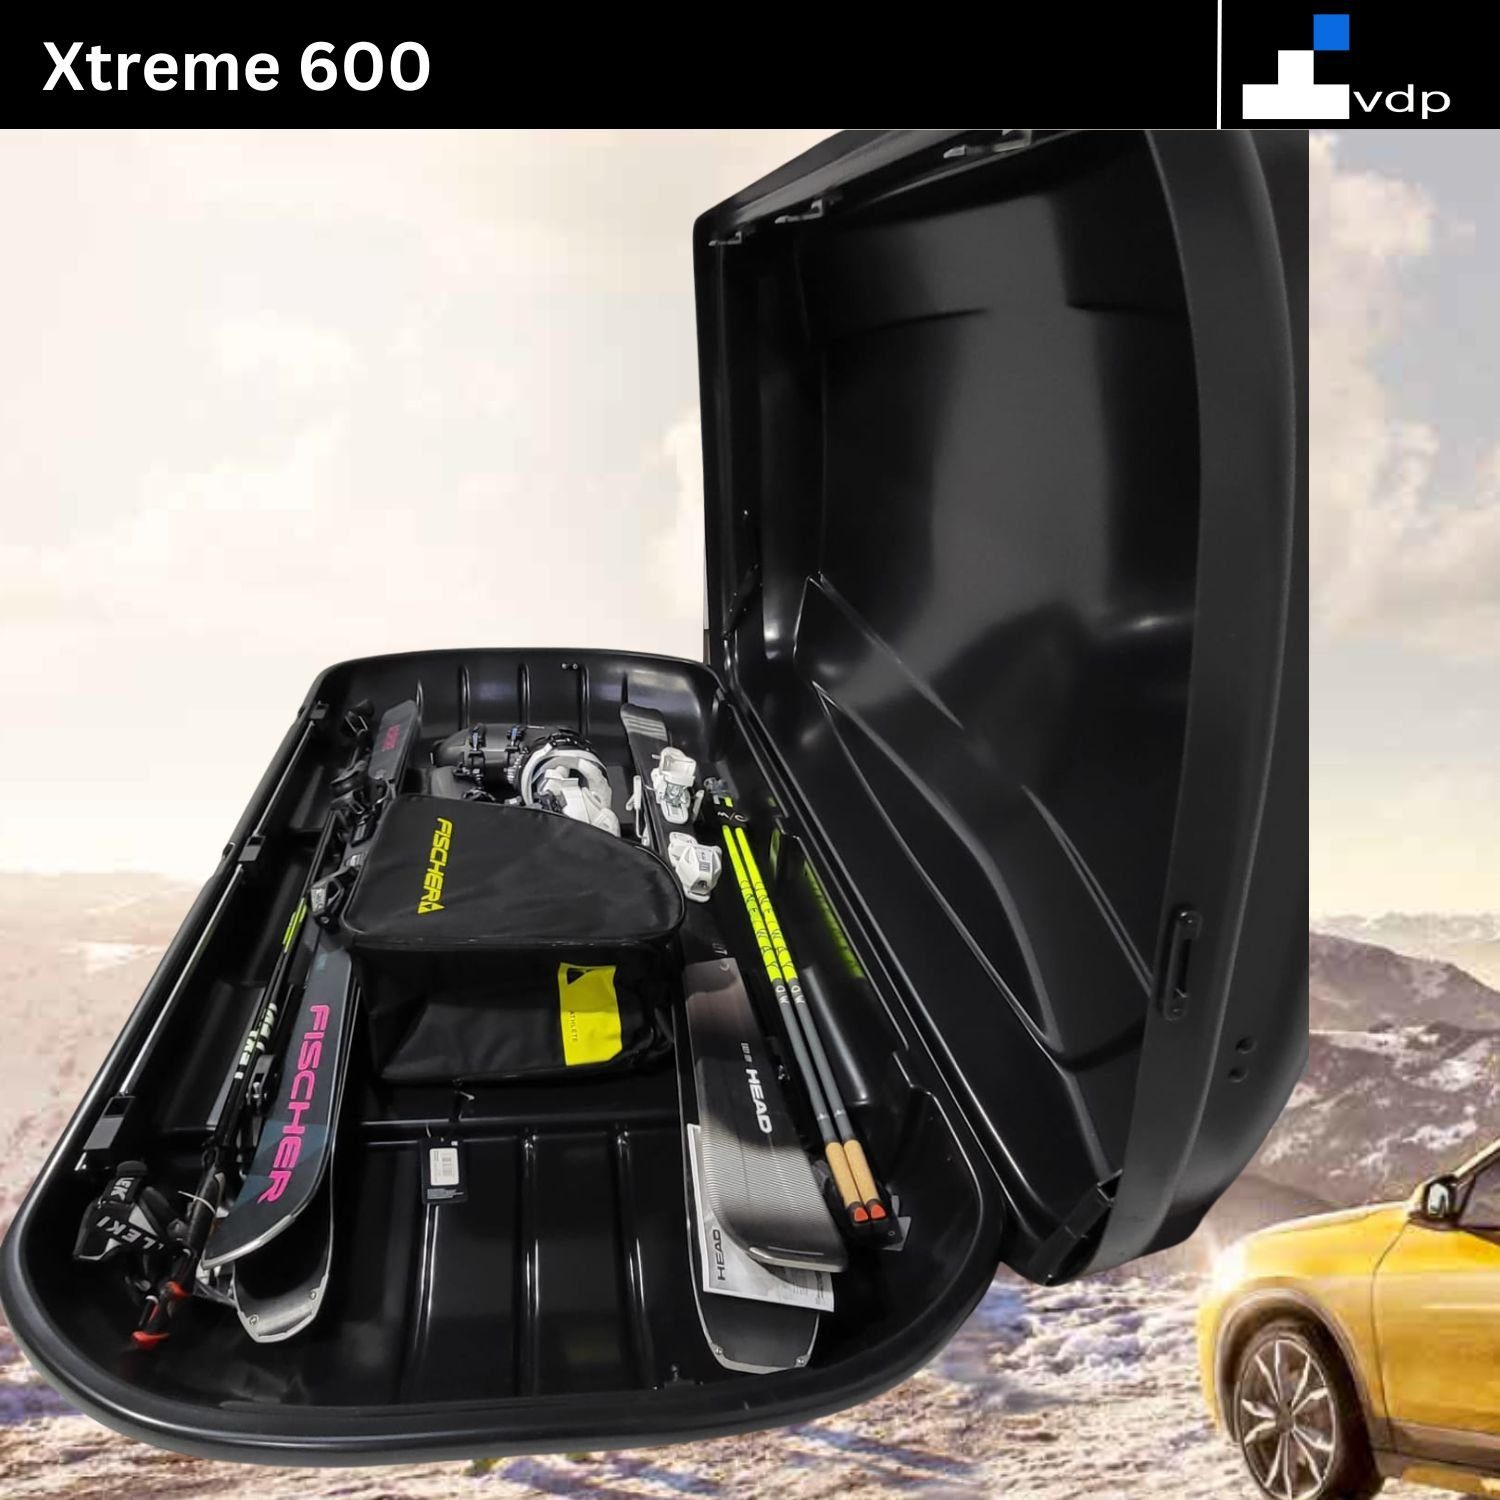 VDP Dachbox, (Winterausrüstung Liter Skibox Ski 400,500,600 der geschützt), mit Dachbox Snowboard Xtreme sicher Skibox